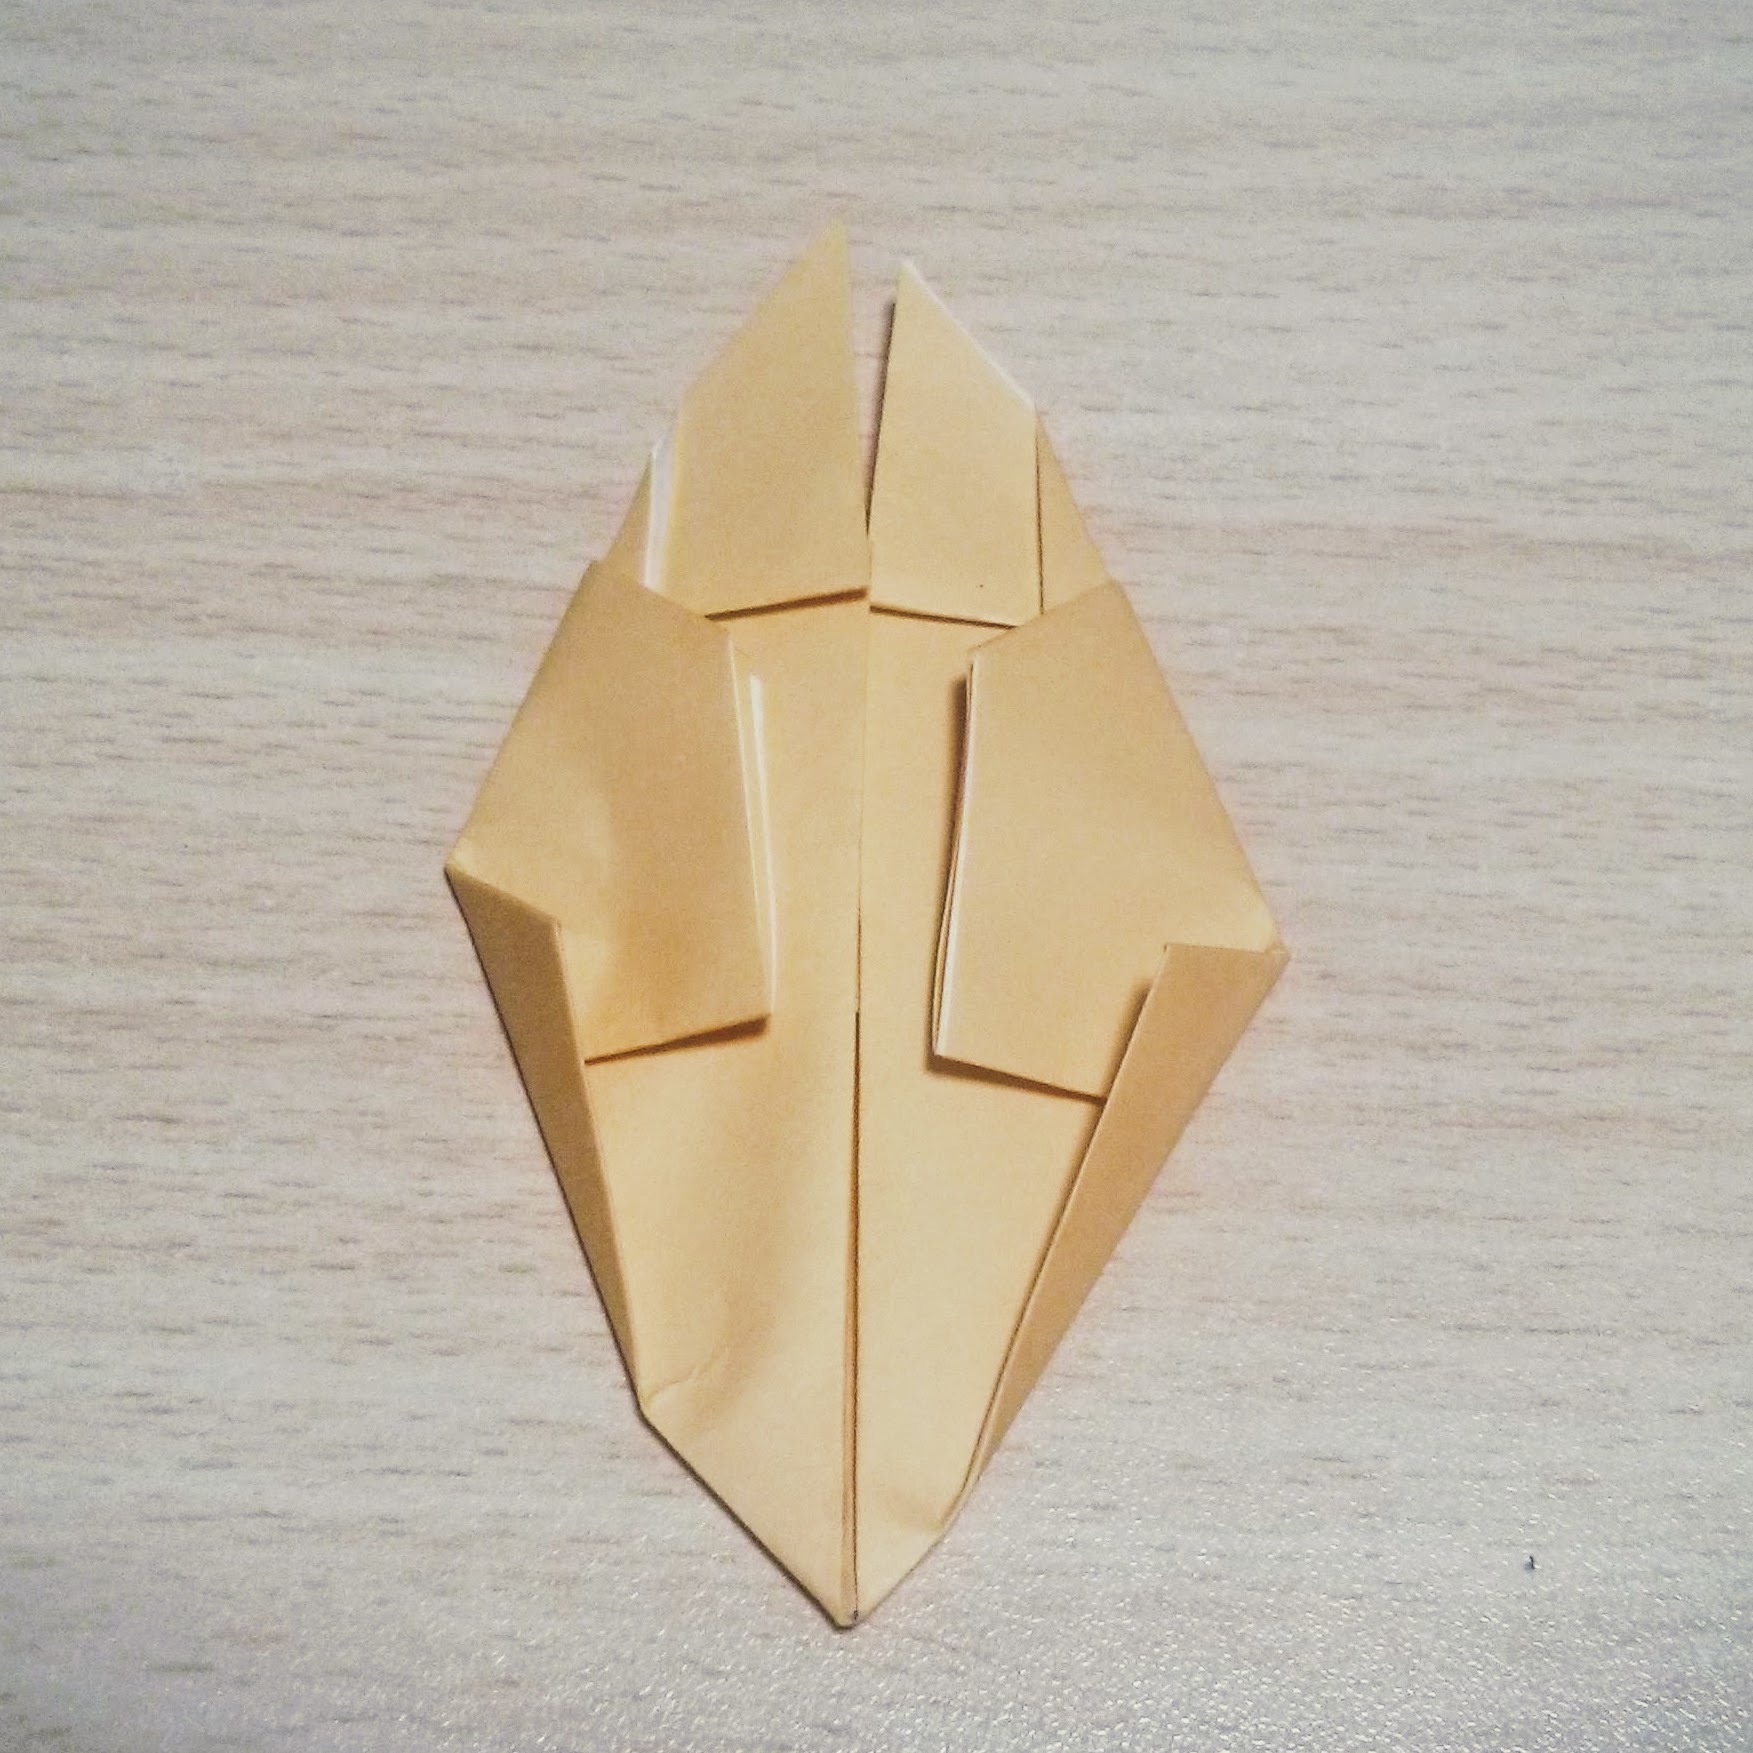 ジブリキャラクター トロロ の折り紙での折り方 平面 立体の作り方まとめ 3ページ目 暮らし の